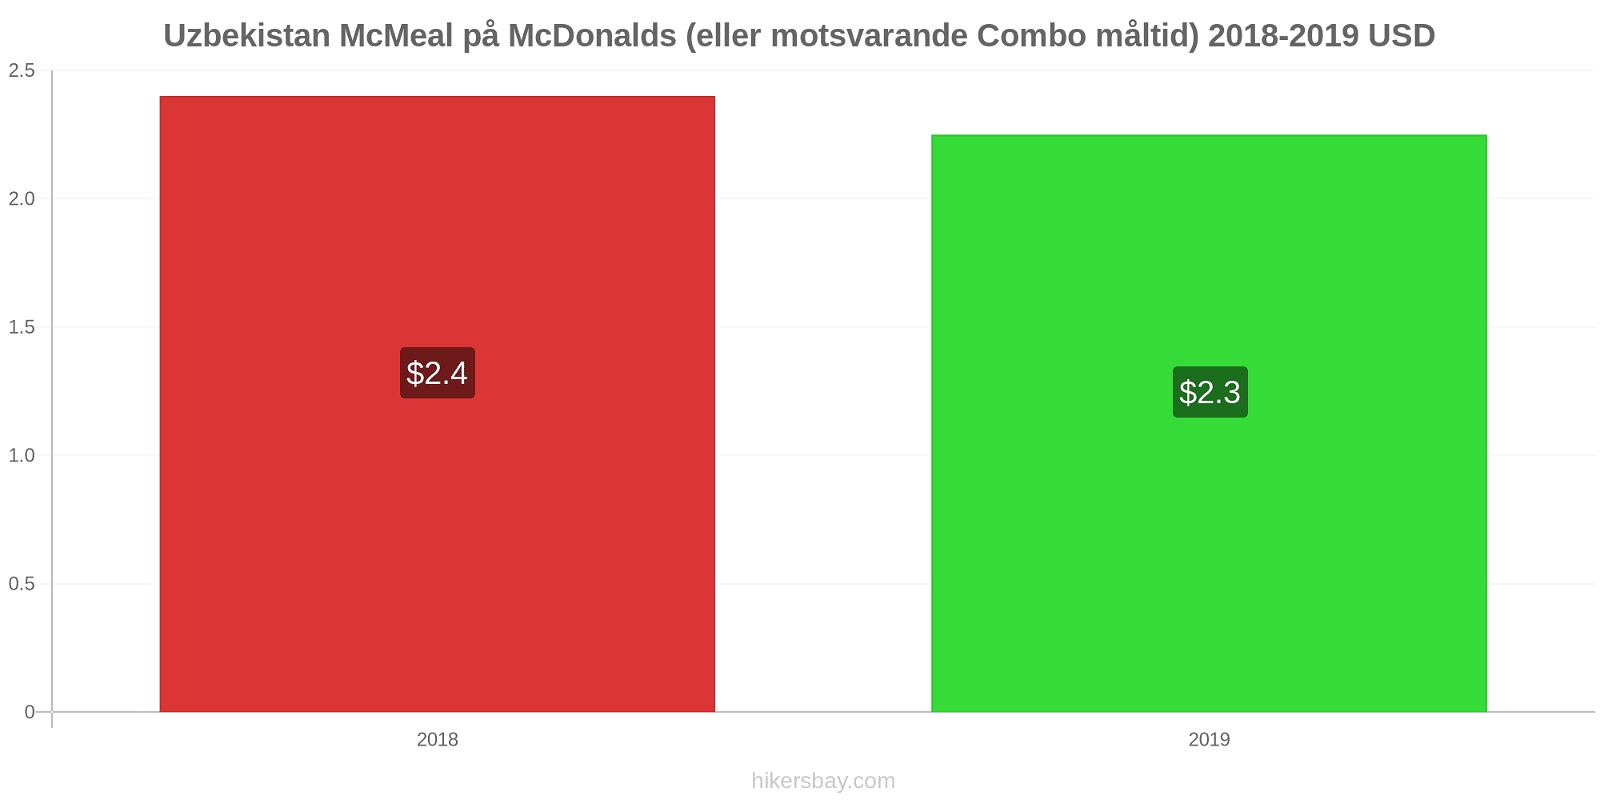 Uzbekistan prisförändringar McMeal på McDonalds (eller motsvarande Combo måltid) hikersbay.com